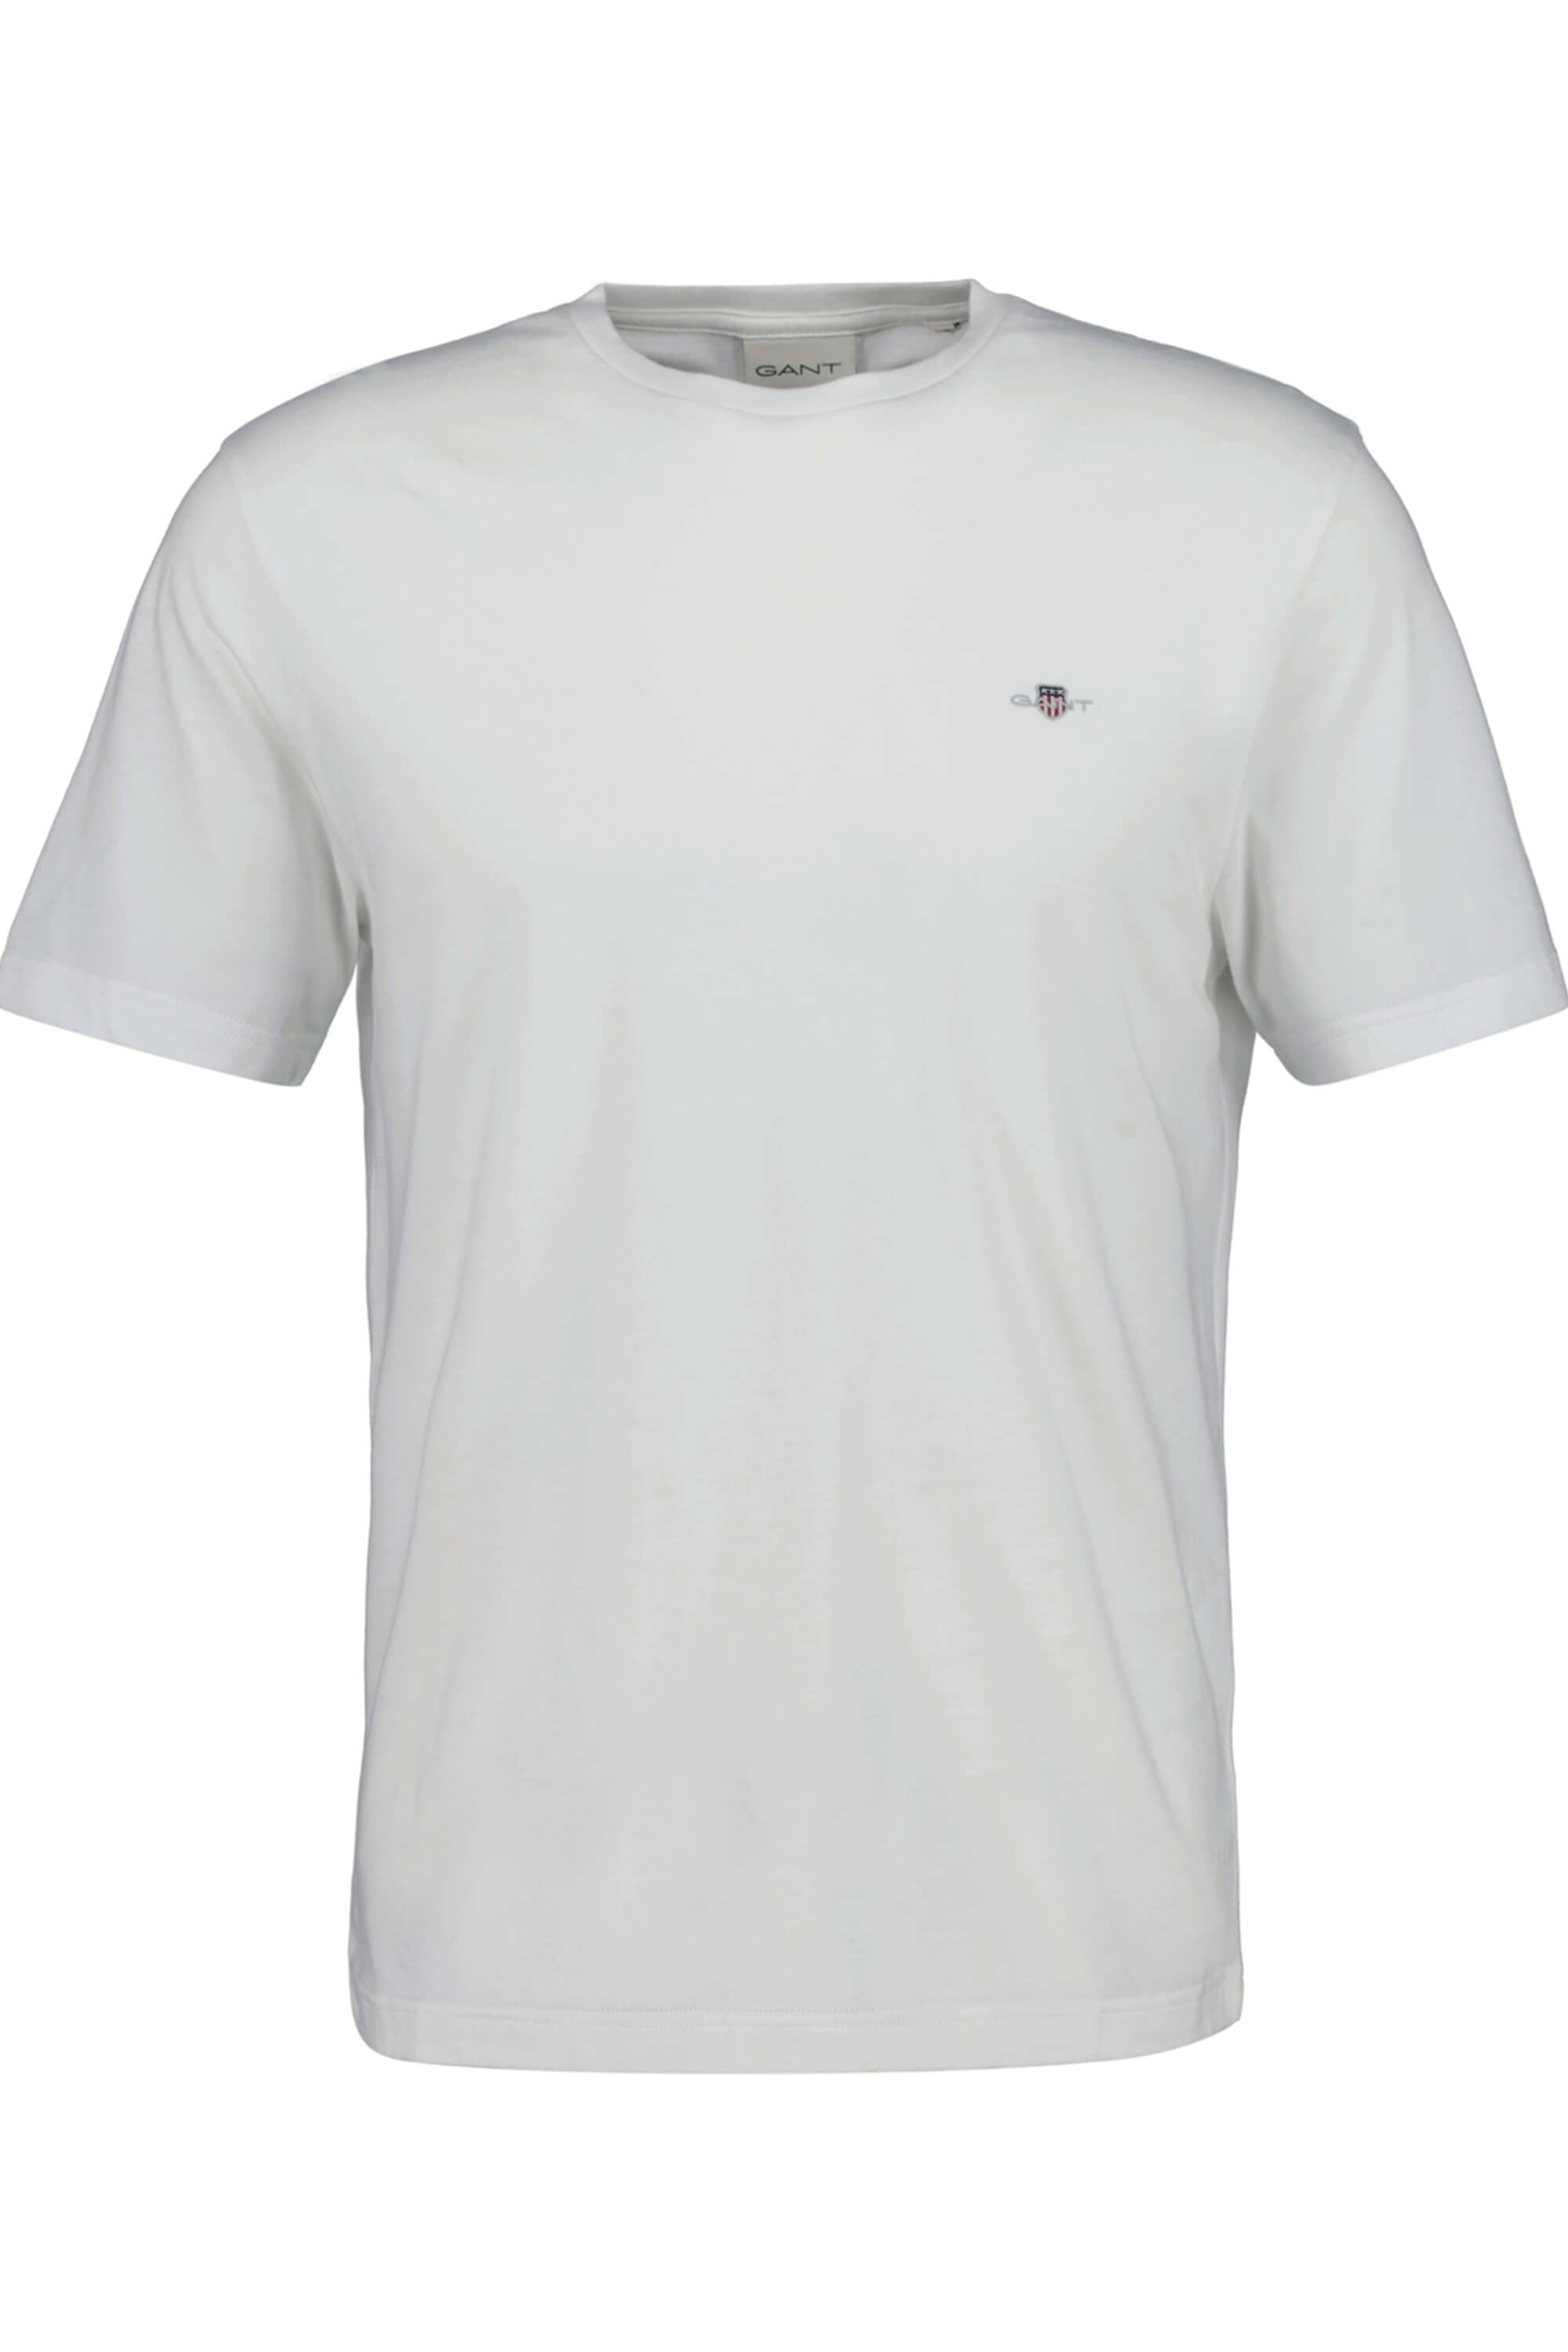 Gant Shield T-Shirt White